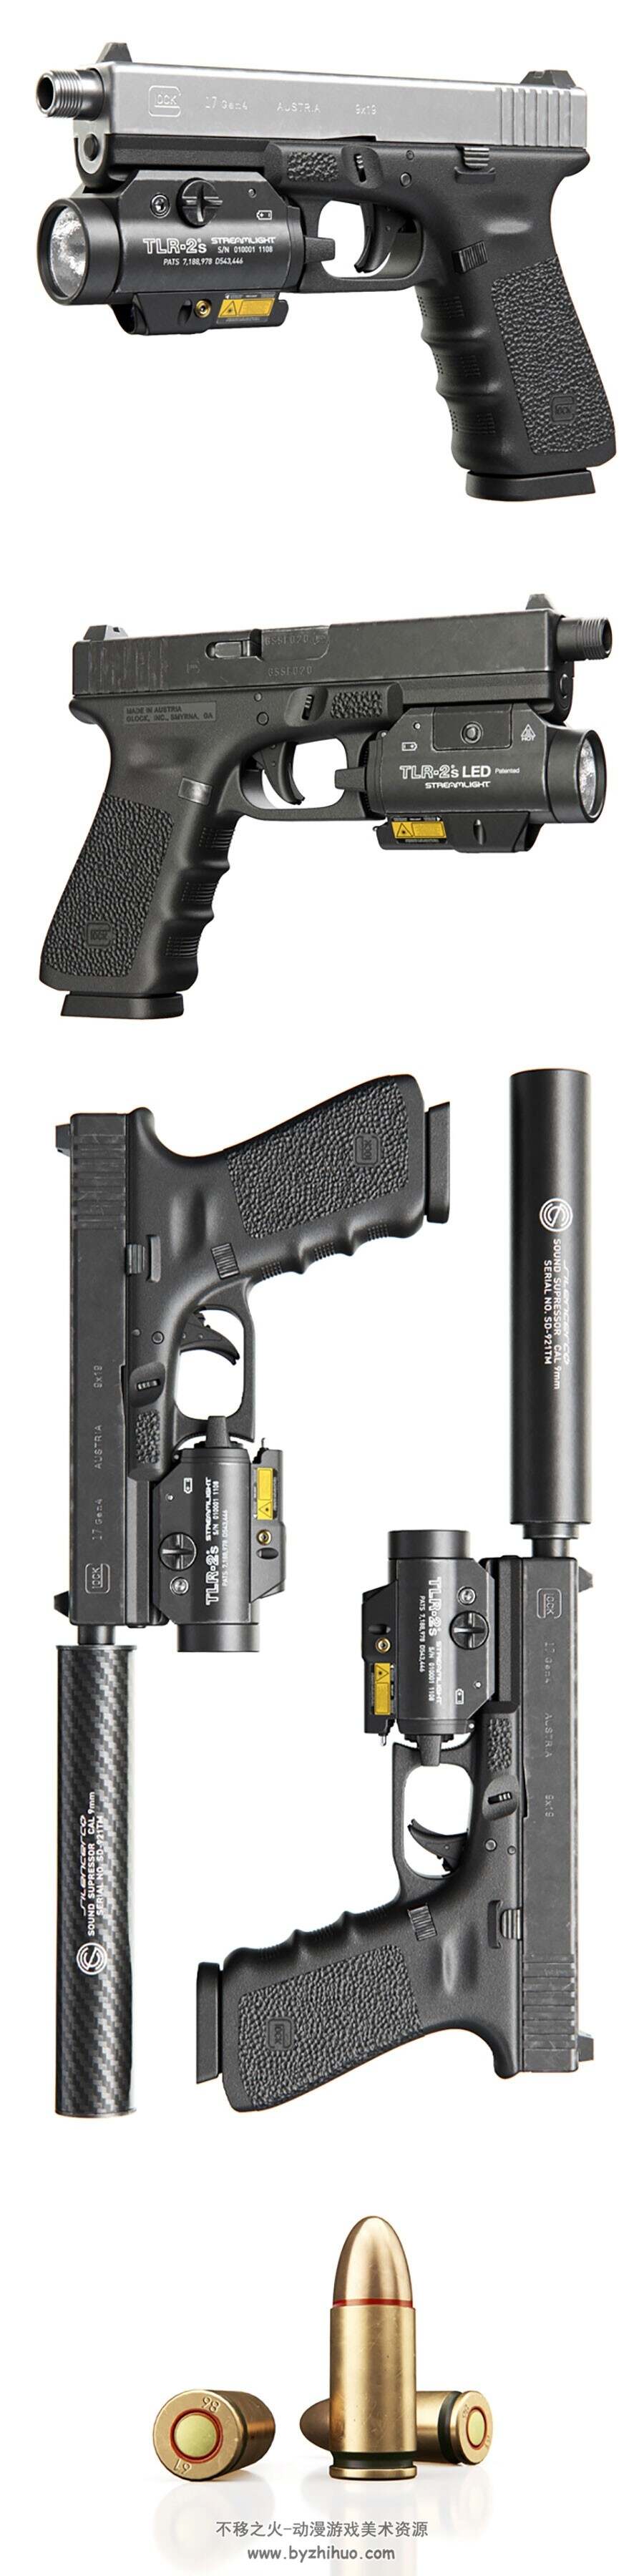 次世代 逼真枪械Glock 17 Gen4 + Flashlight with LTP 3D模型 高模